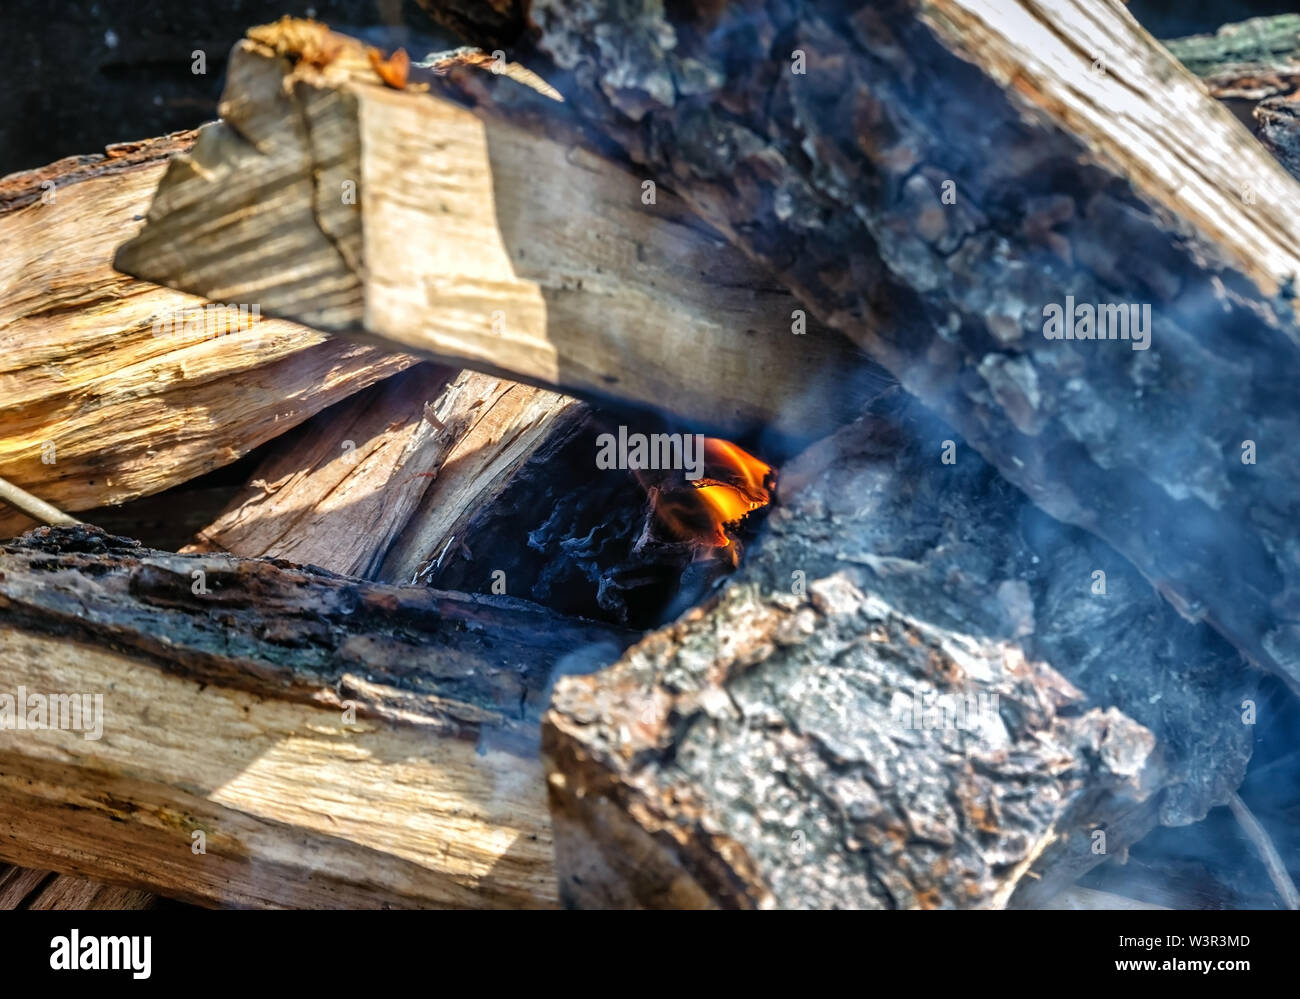 Nur er aber nahm das Feuer unter den Holz - Feuer im Grill, erschienen. Stockfoto